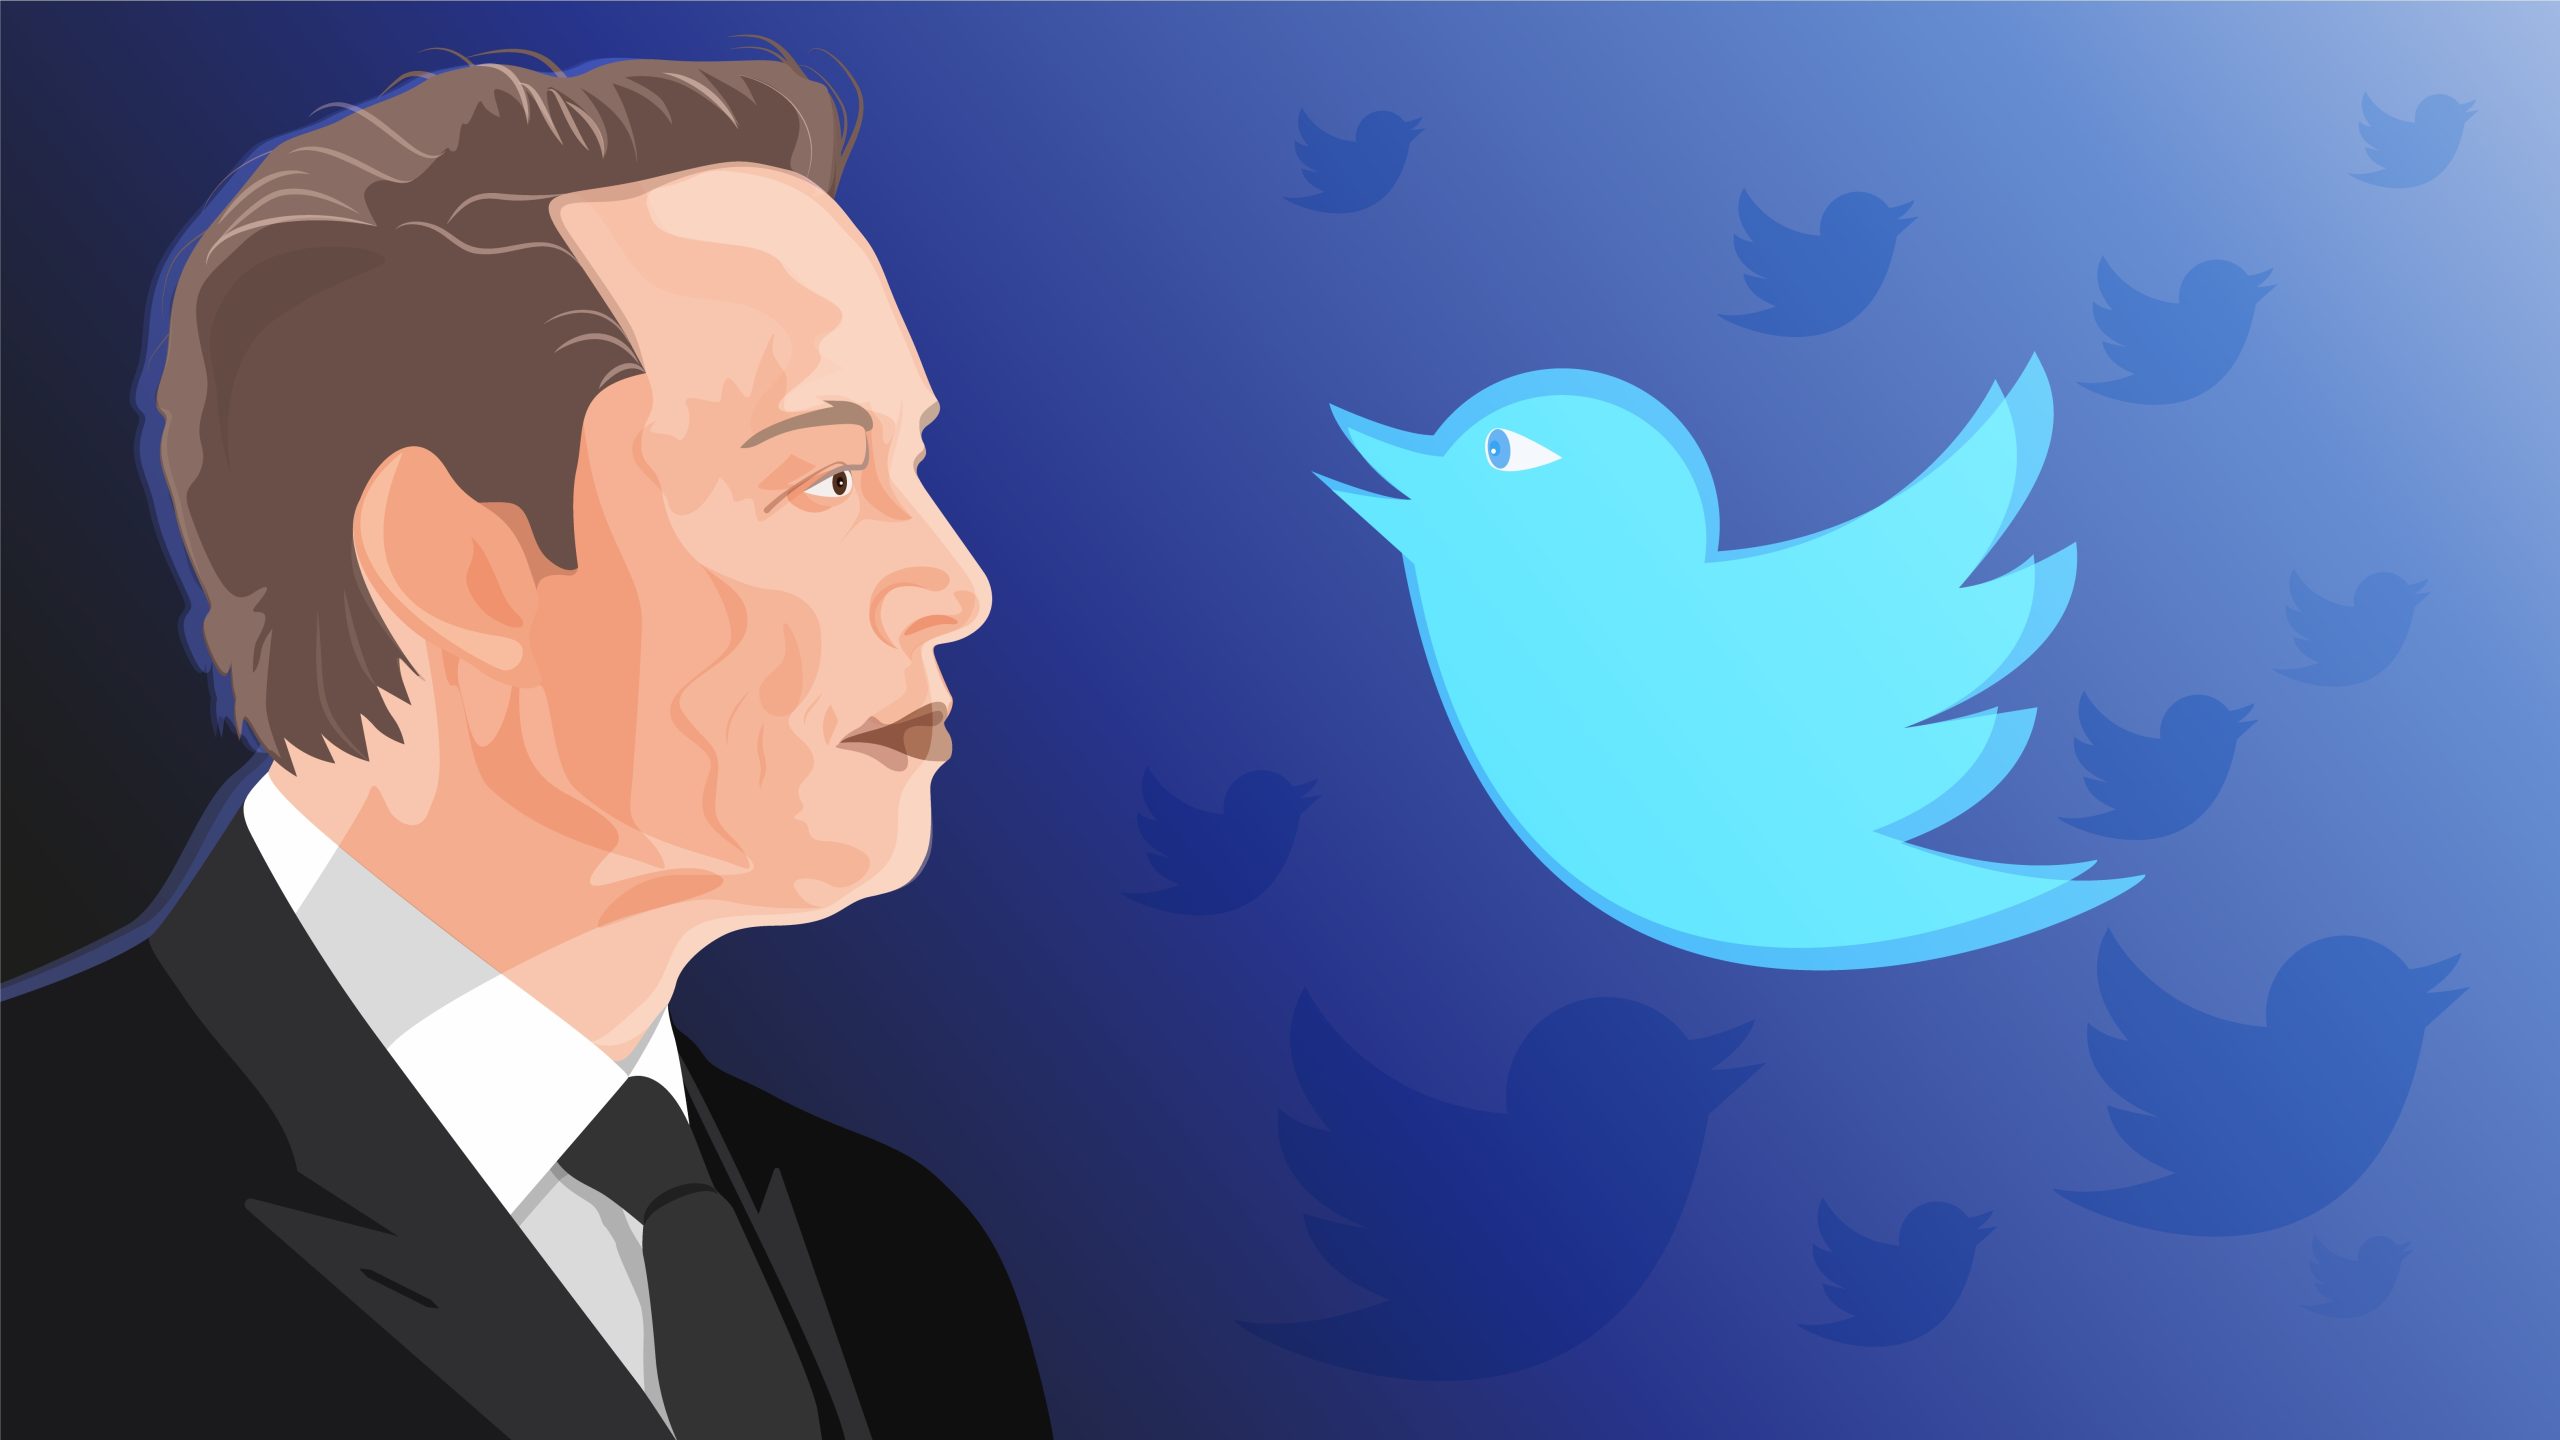 Ilustração mostra Elon Musk olhando para o símbolo do Twitter